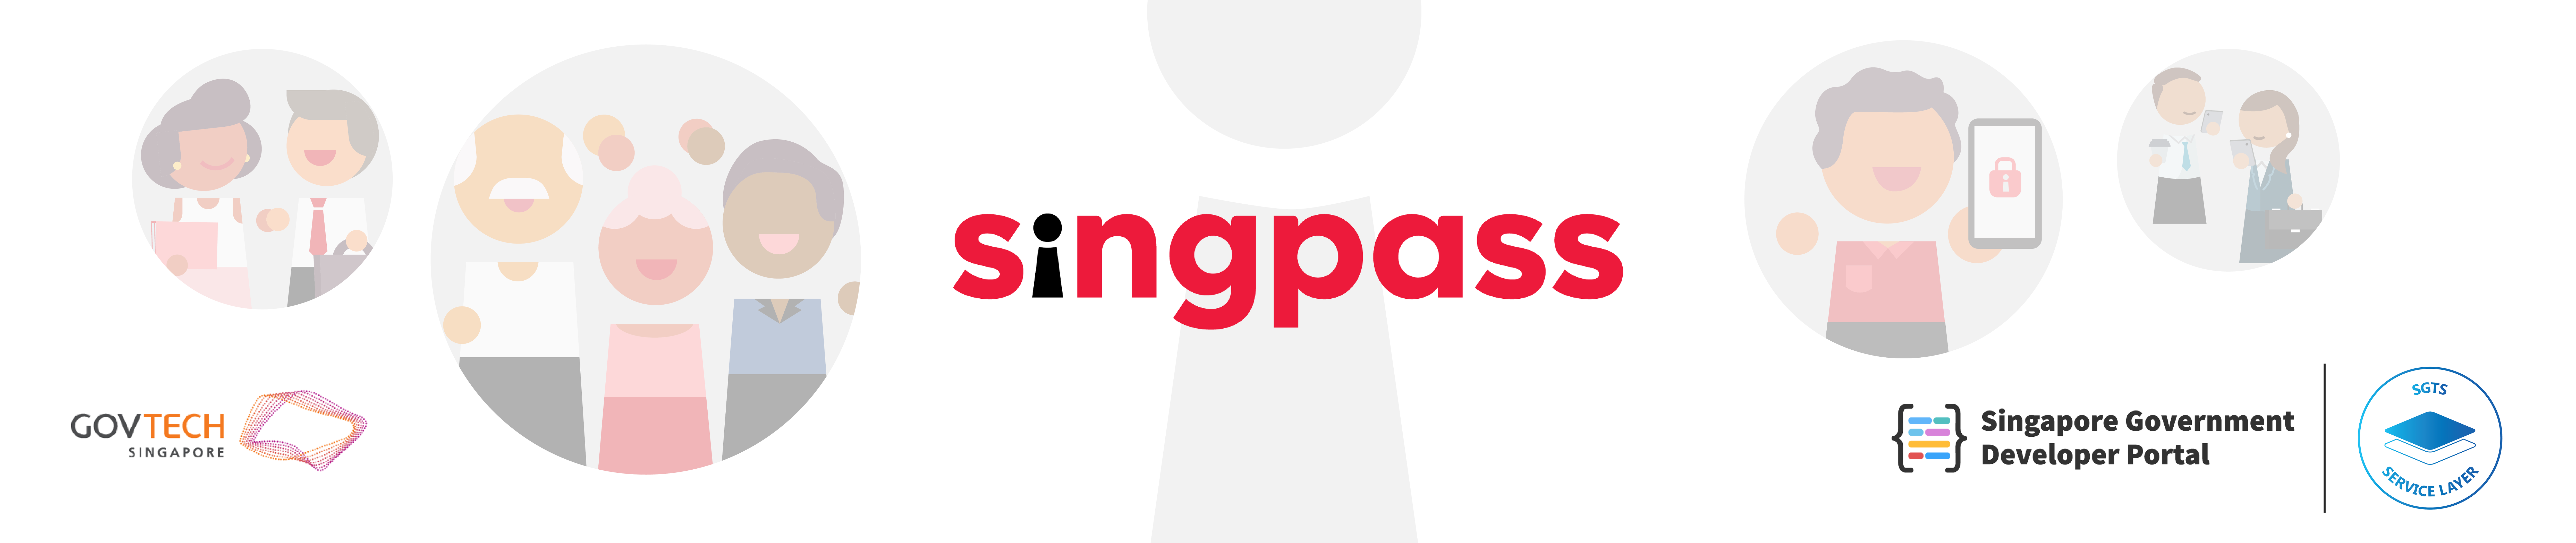 Singpass header banner